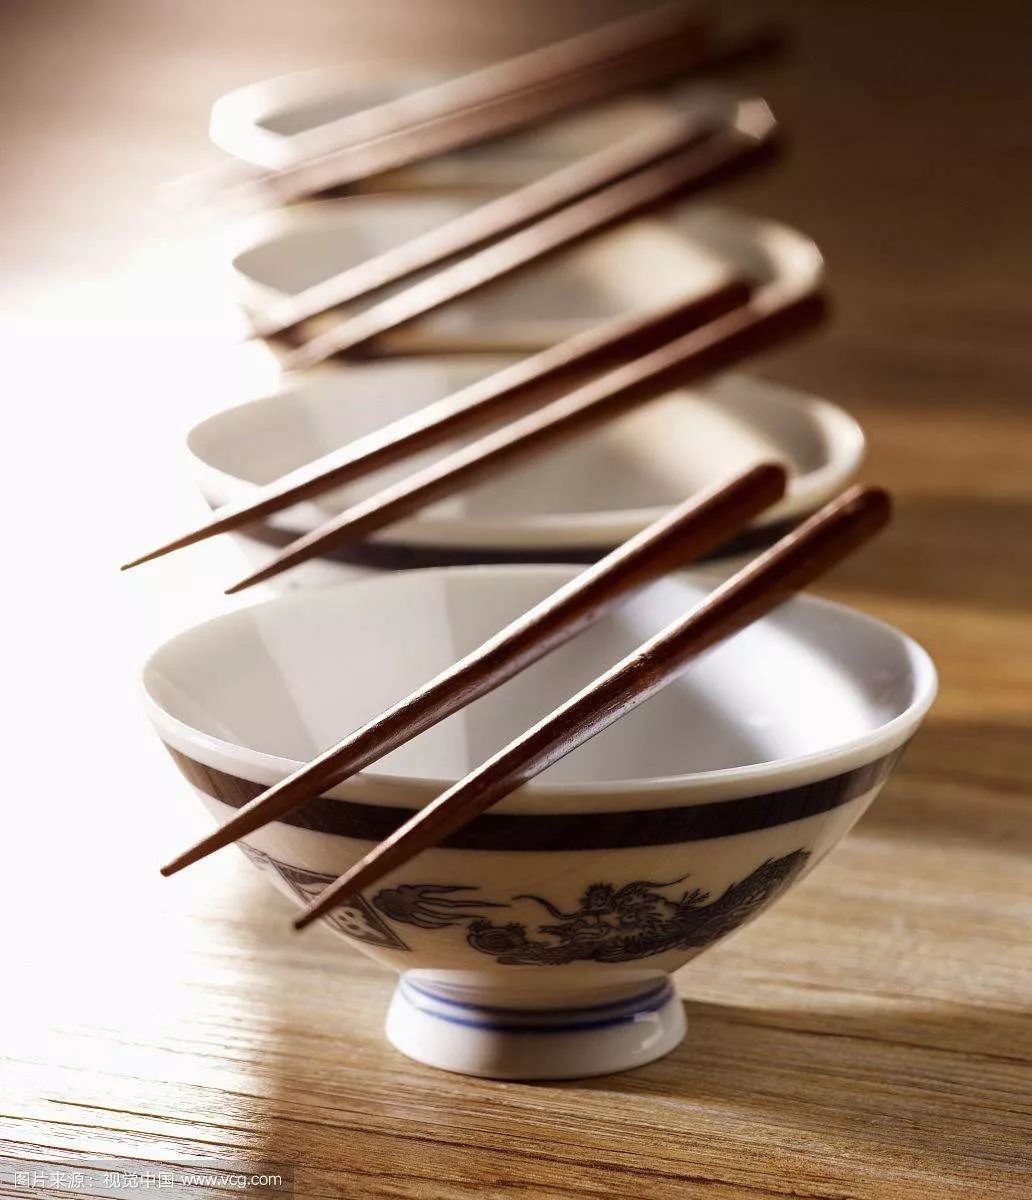 一筷萬拿: 常見的筷子握法